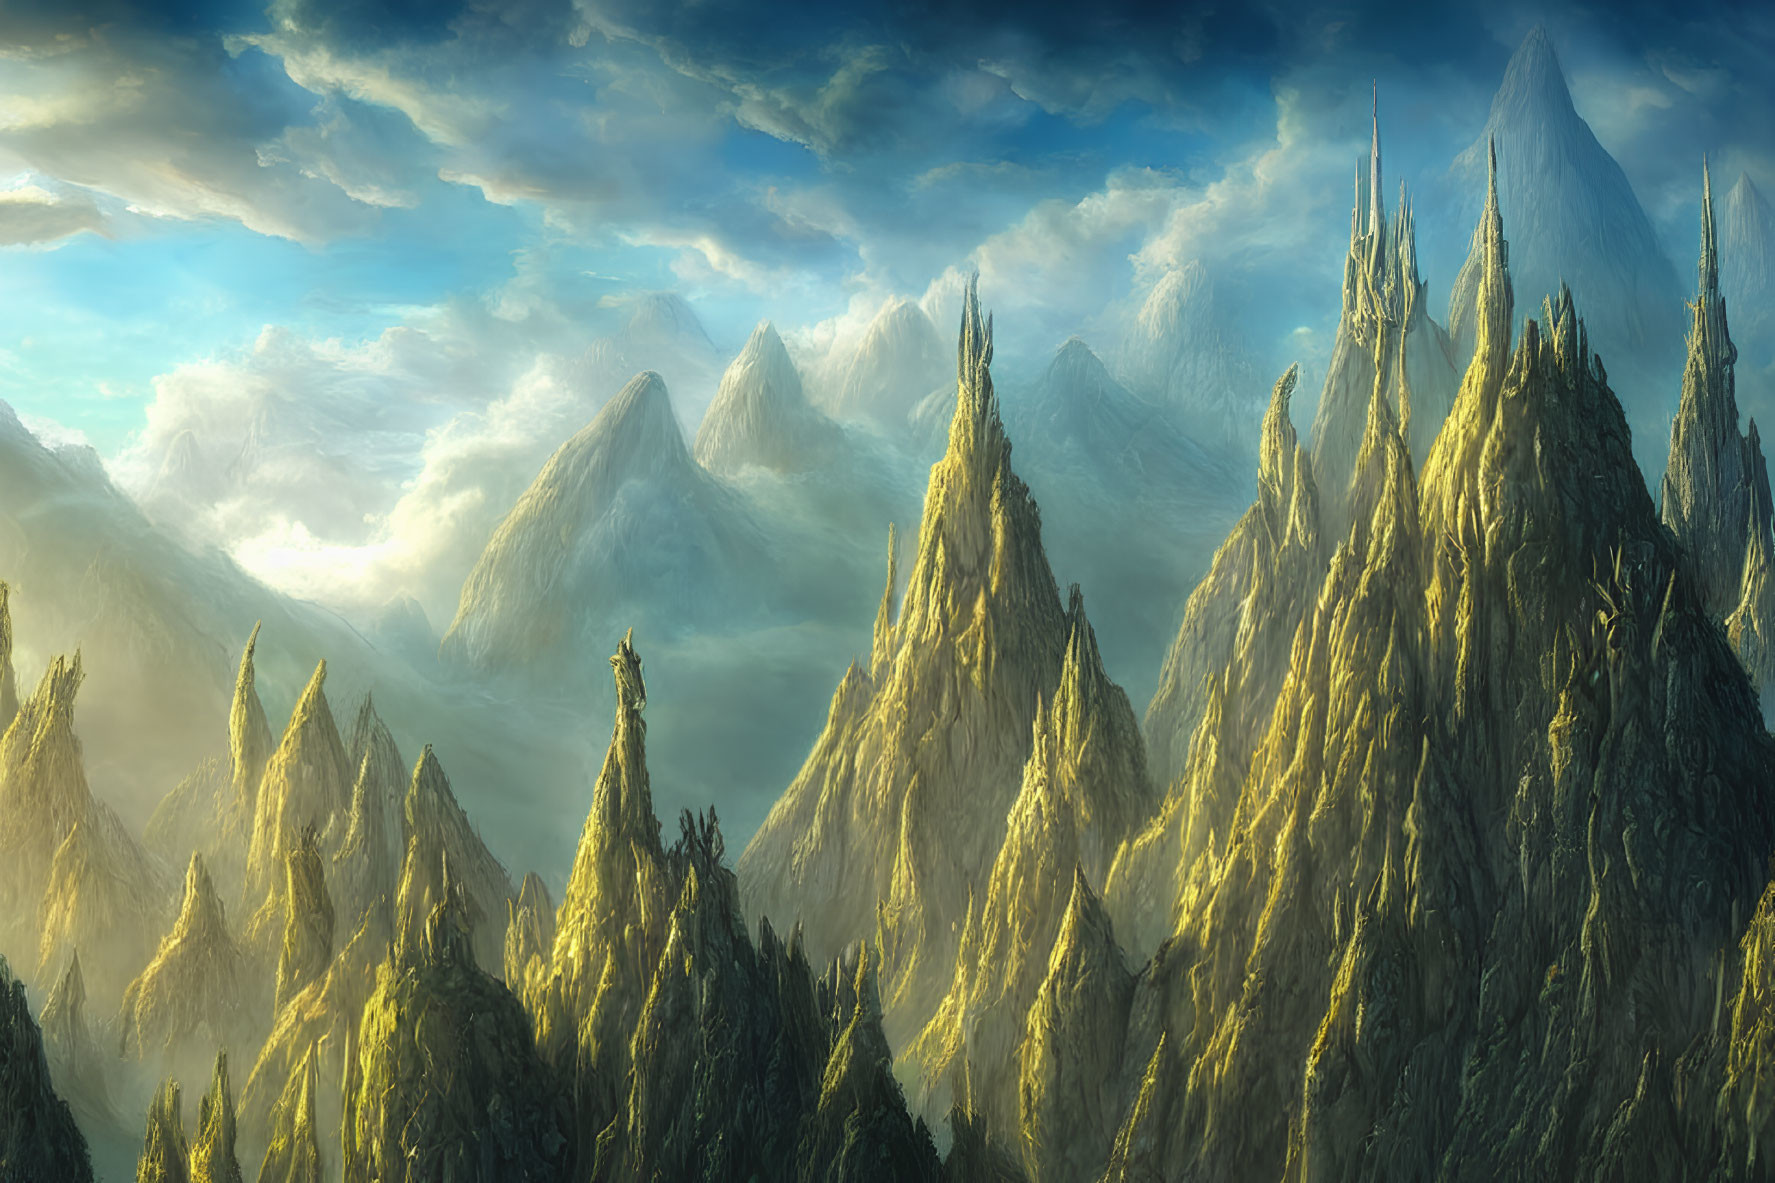 Sunlit misty mountain peaks in serene fantasy landscape